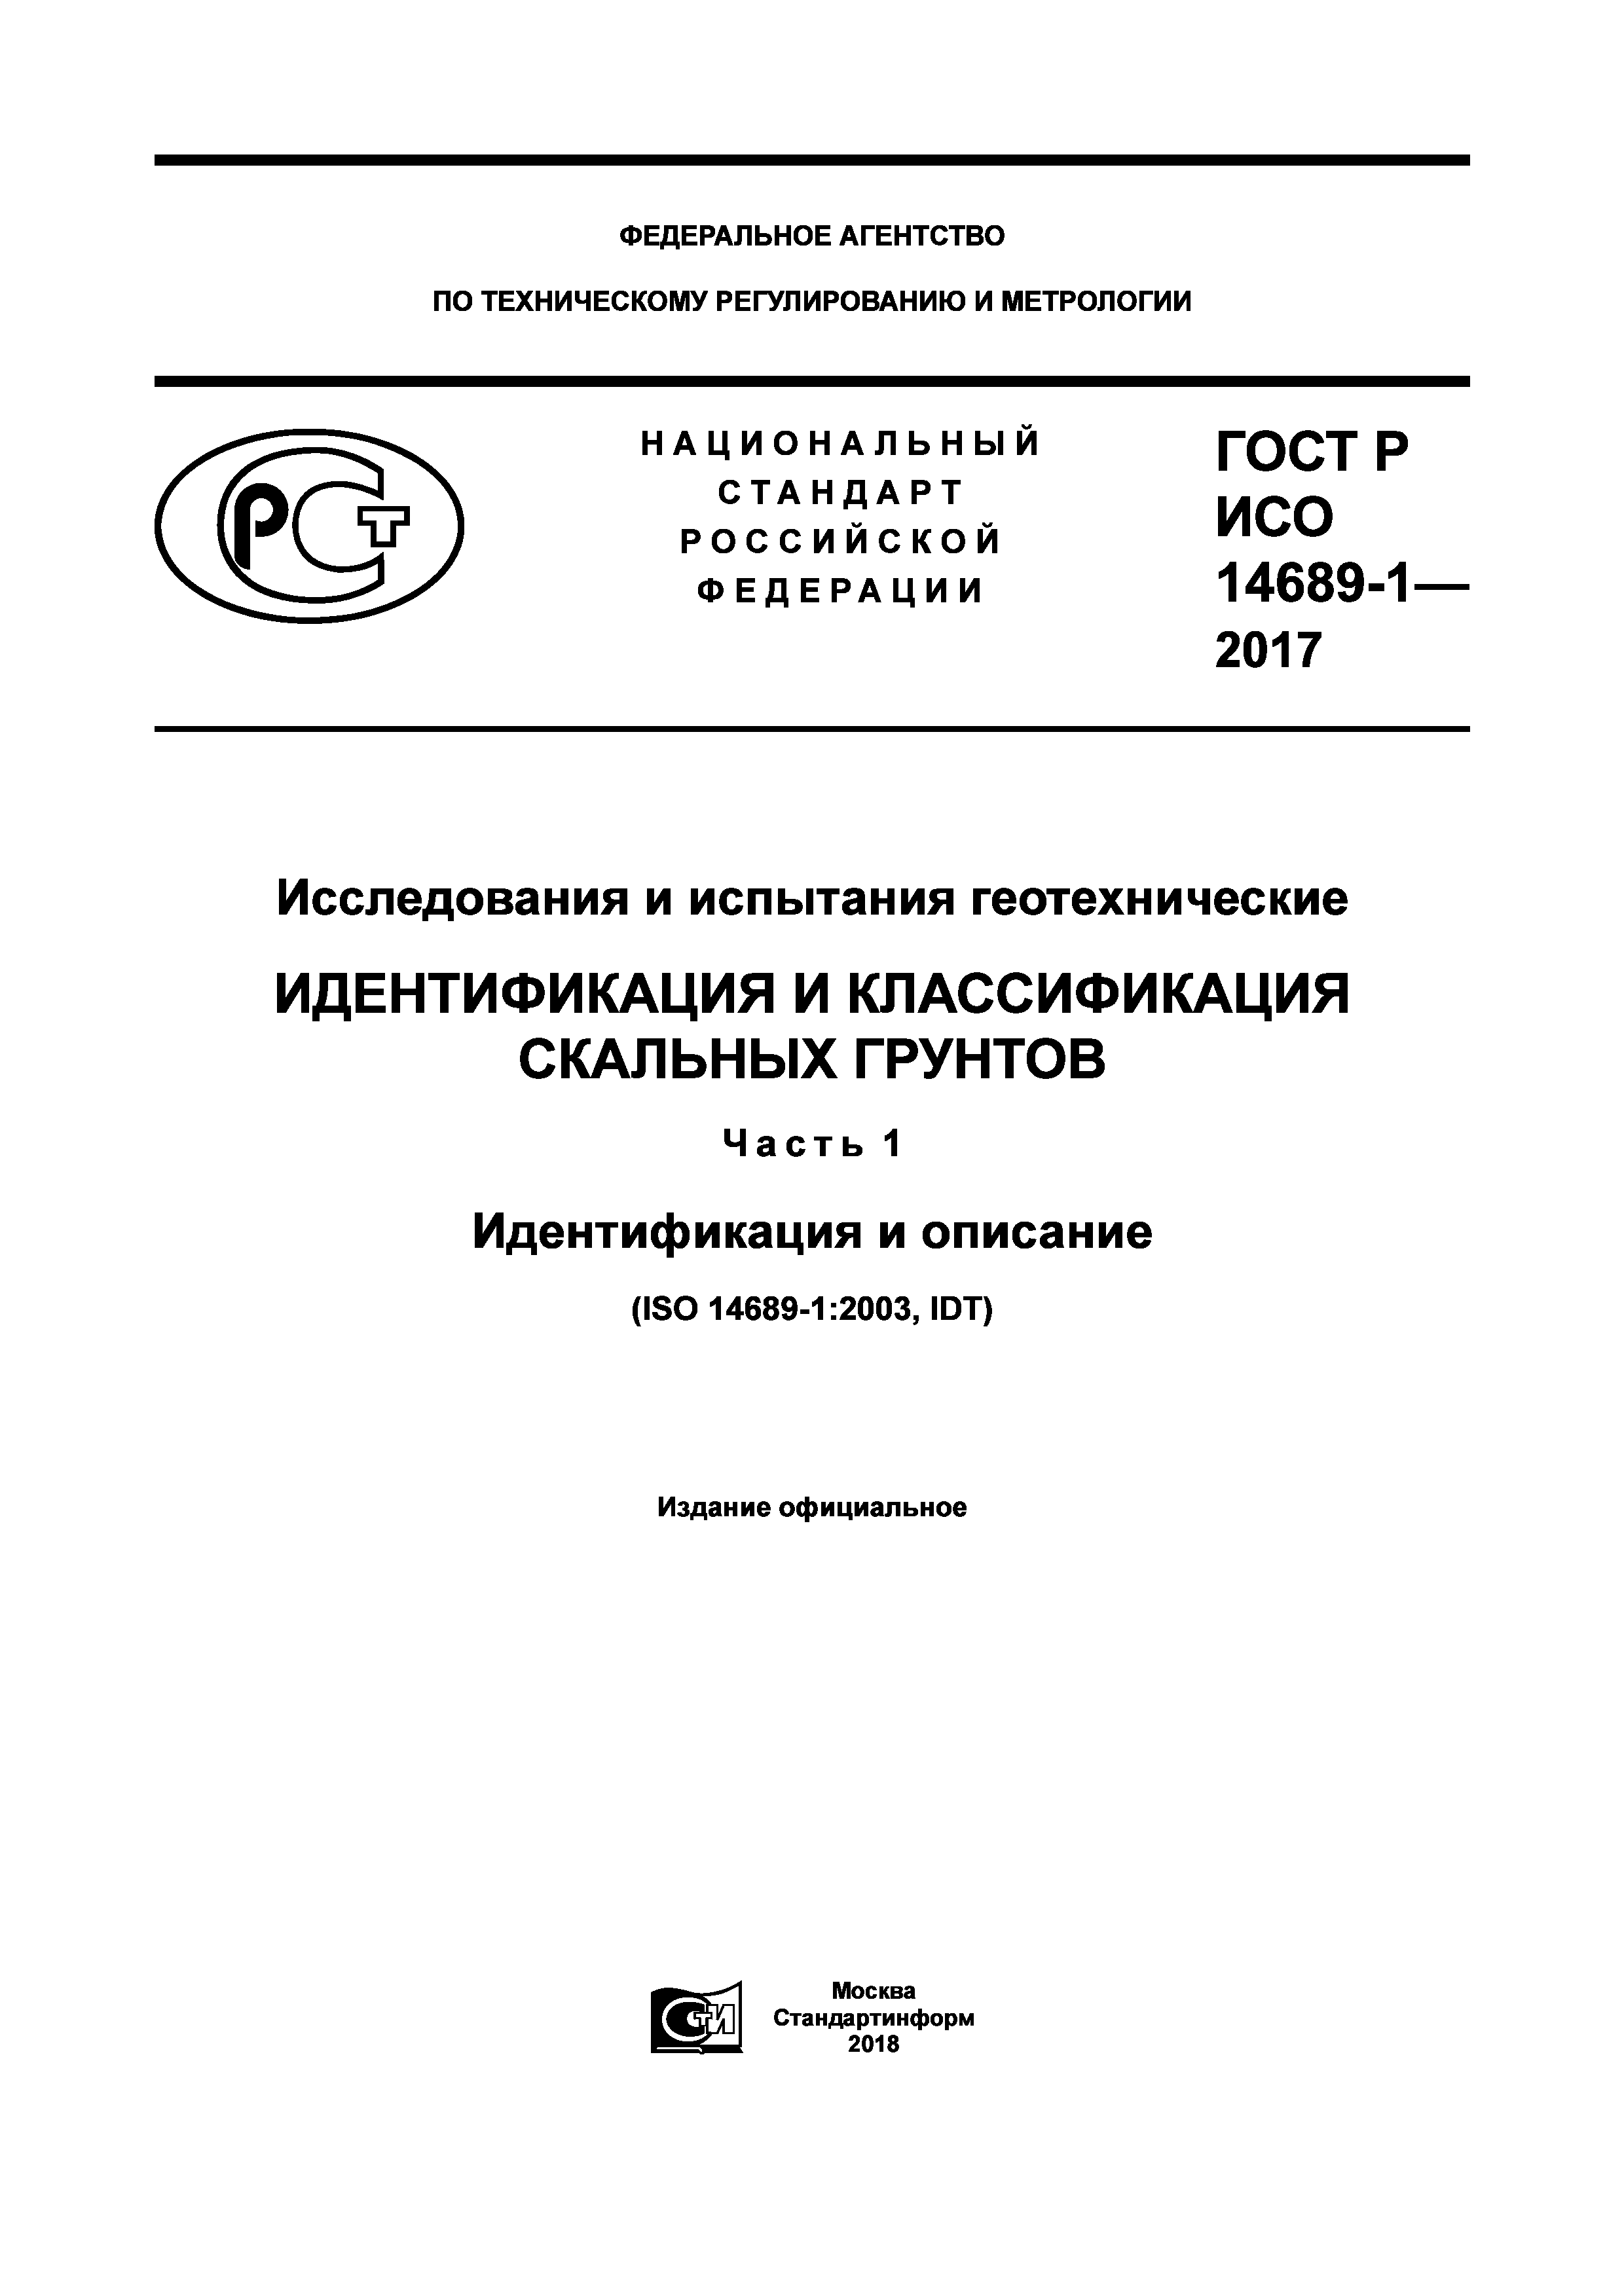 ГОСТ Р ИСО 14689-1-2017